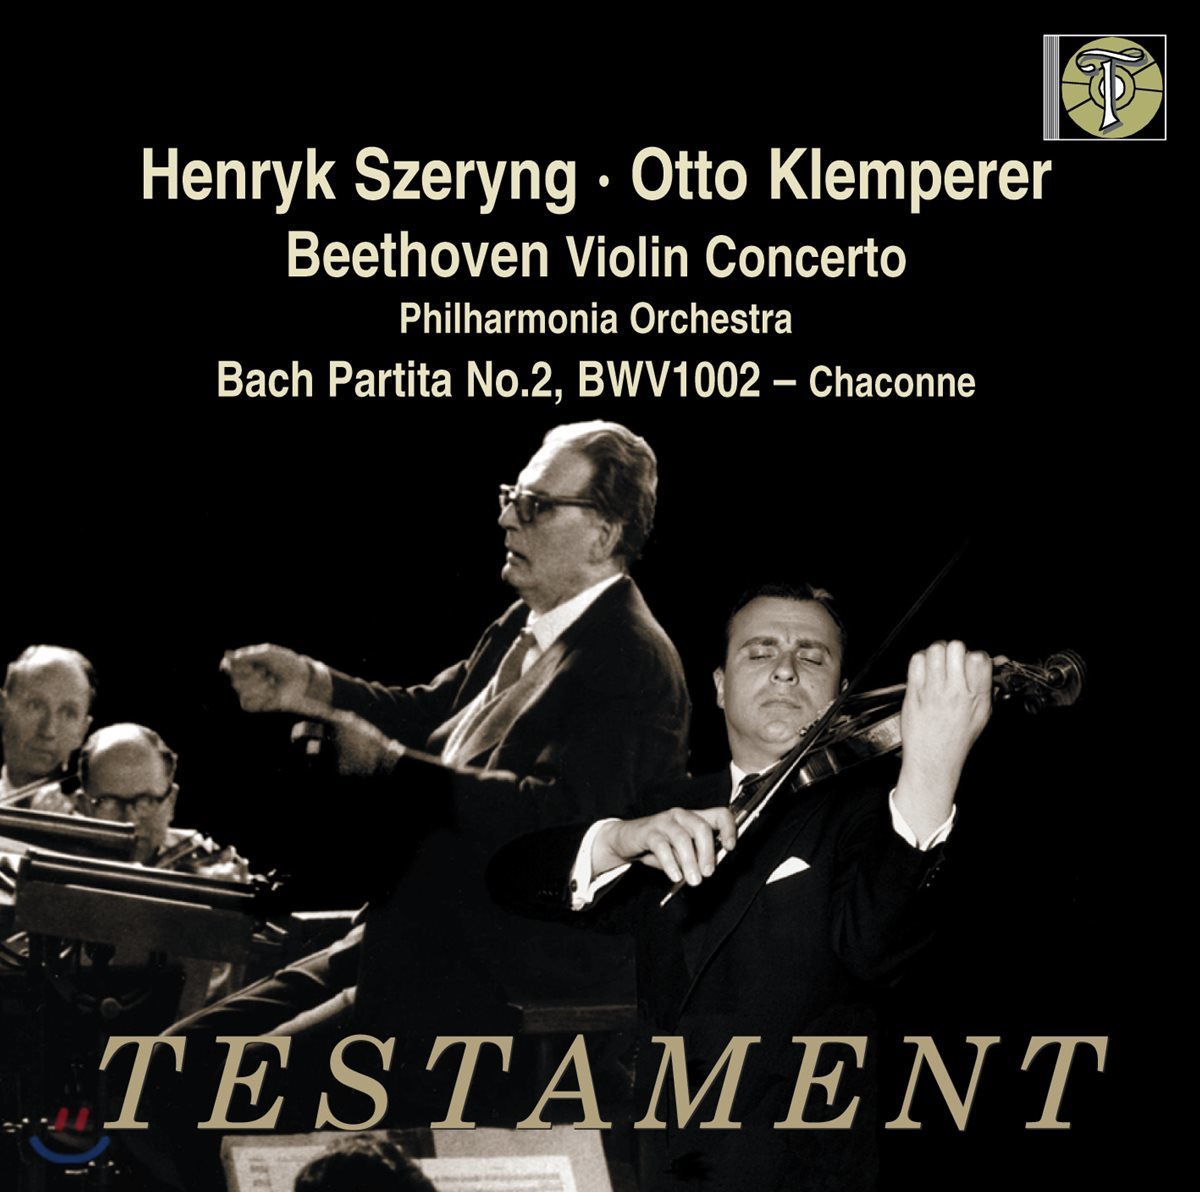 Henryk Szeryng  베토벤: 바이올린 협주곡 - 헨릭 셰링 (Beethoven: Violin Concerto in D major, Op. 61)